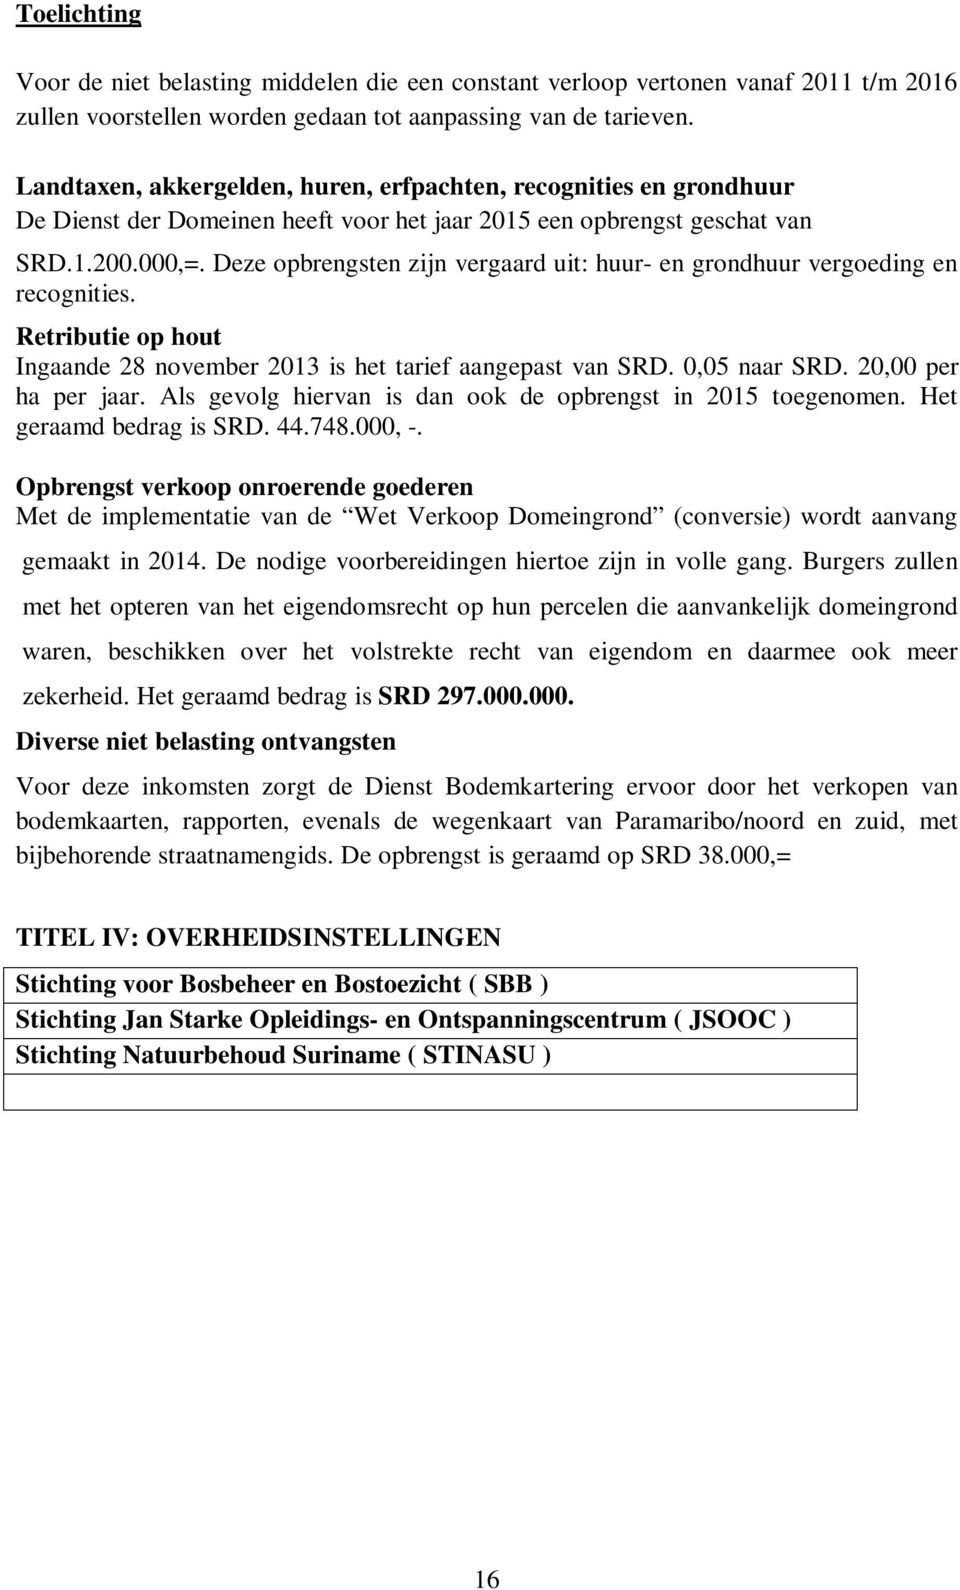 Deze opbrengsten zijn vergaard uit: huur- en grondhuur vergoeding en recognities. Retributie op hout Ingaande 28 november 2013 is het tarief aangepast van SRD. 0,05 naar SRD. 20,00 per ha per jaar.